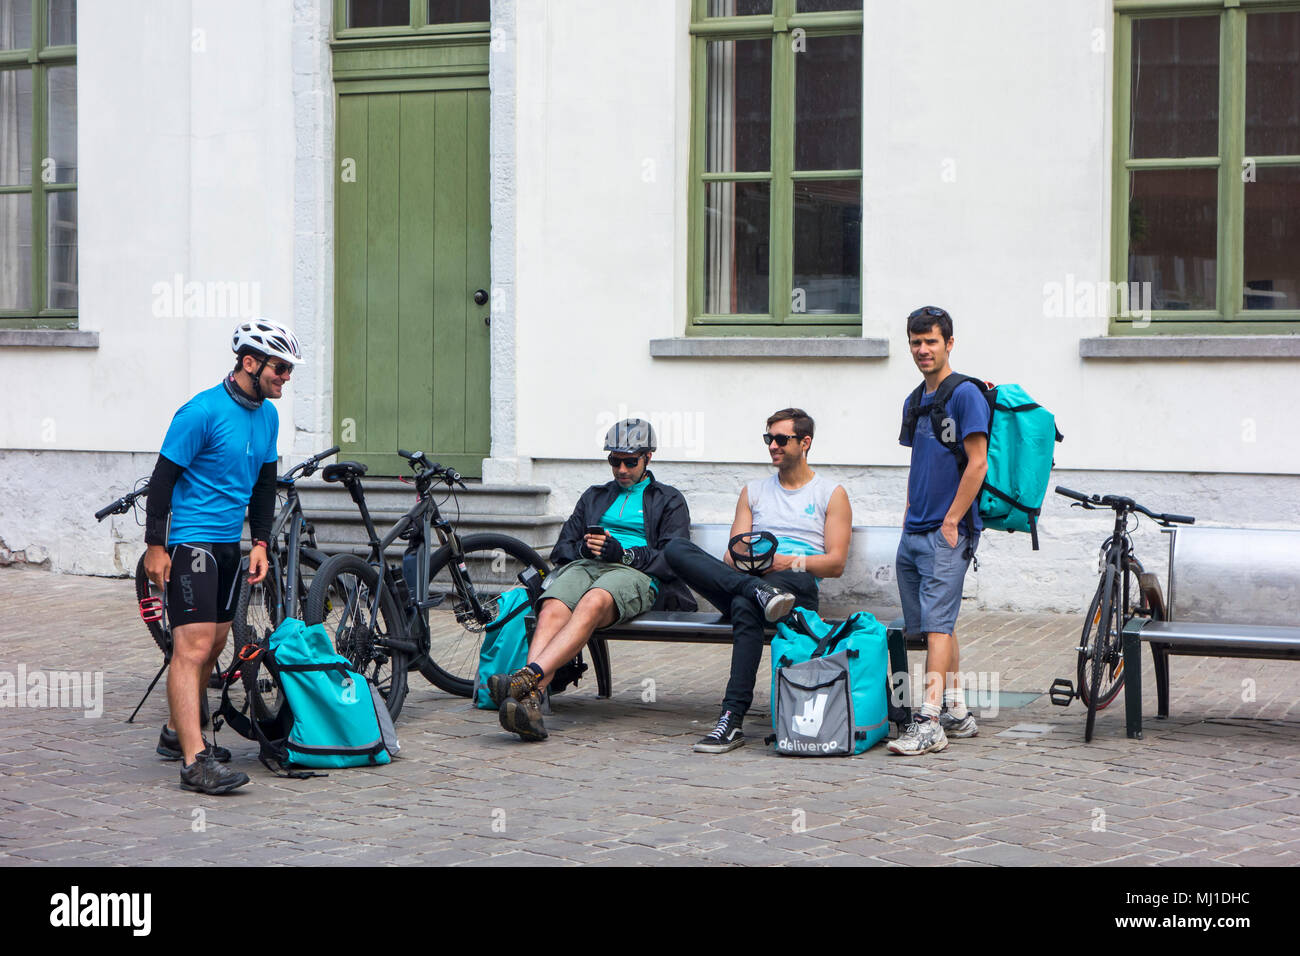 Mensajeros en bicicleta - trabajando para Deliveroo, empresa de distribución de alimentos en línea británica - tomando un descanso en el centro de la ciudad. Foto de stock